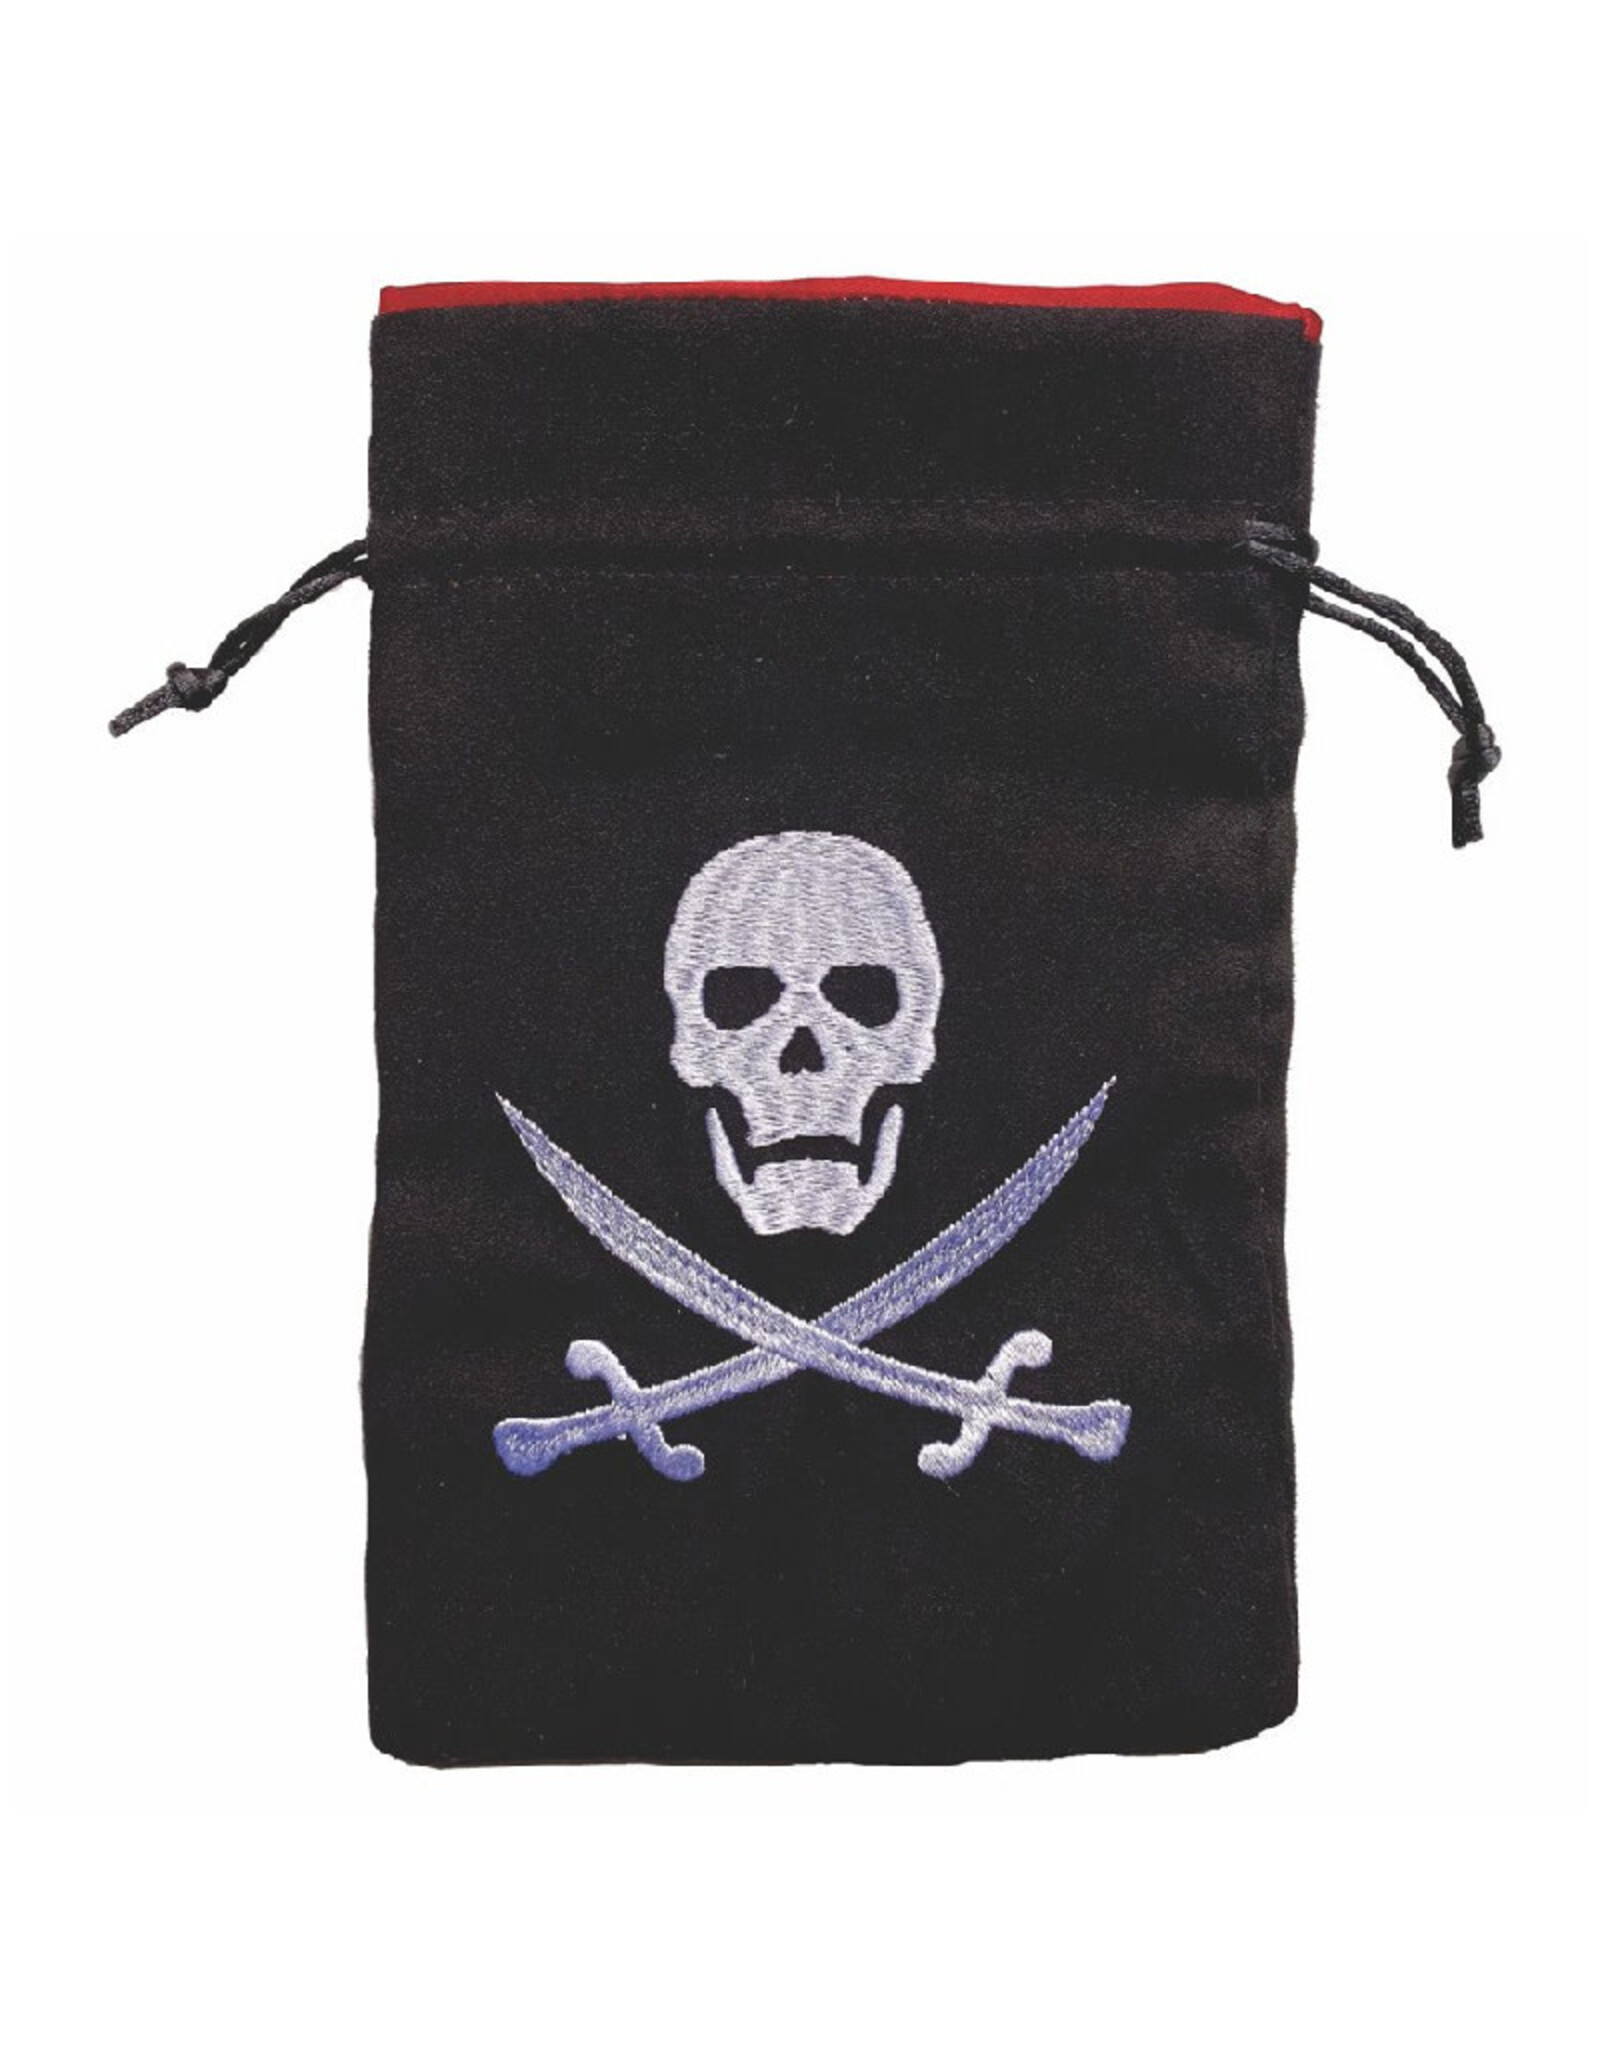 Misc Dice Bag: Pirates